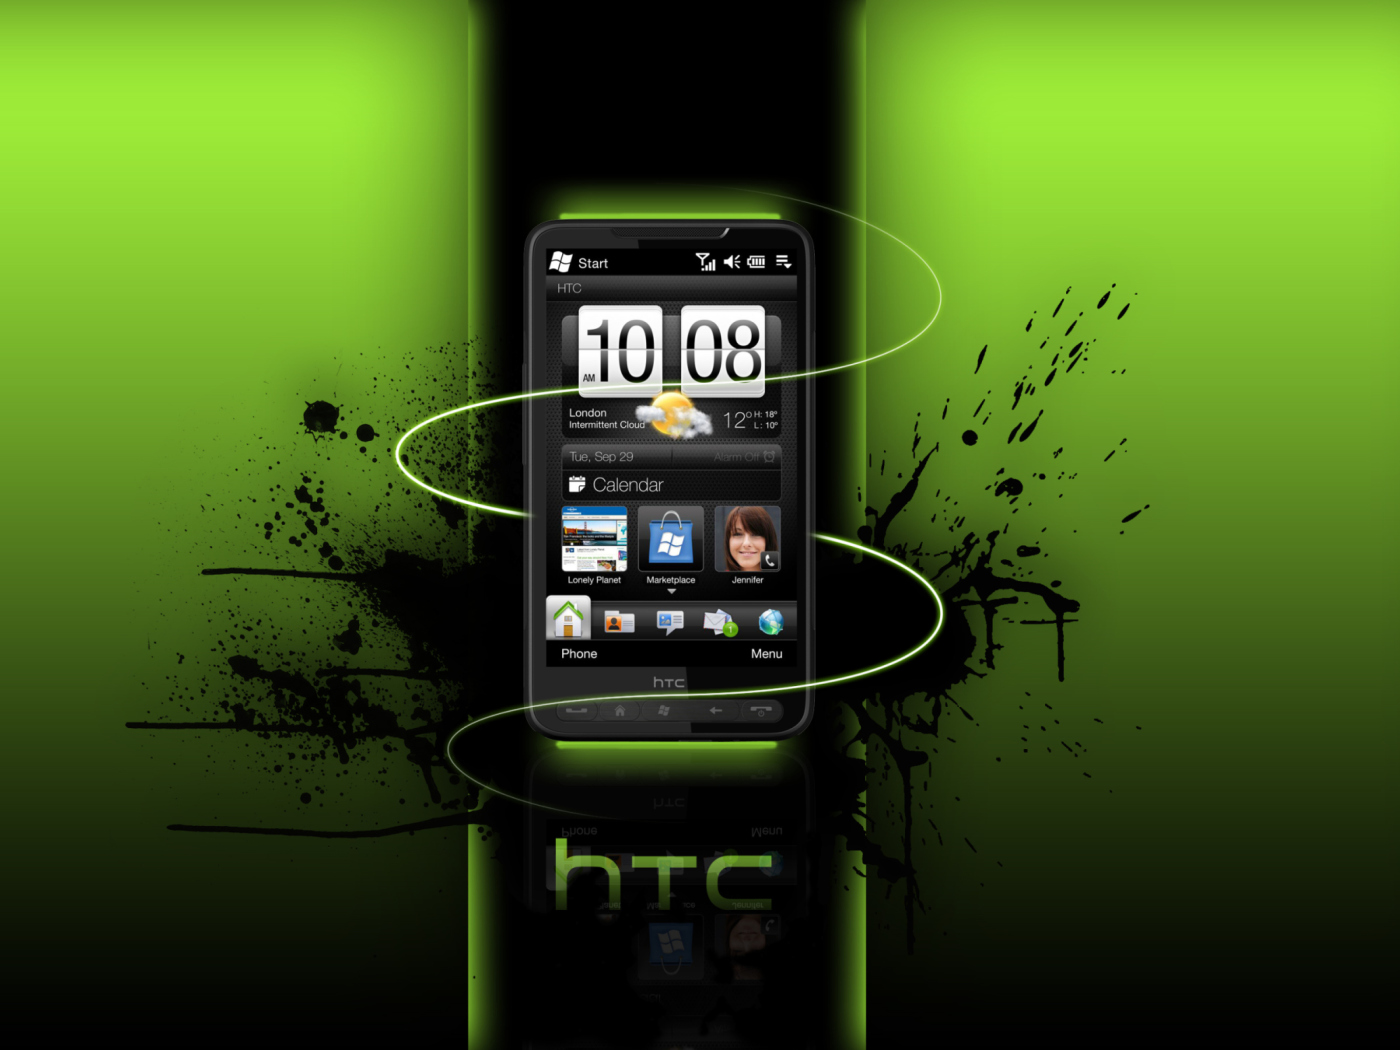 HTC HD wallpaper 1400x1050